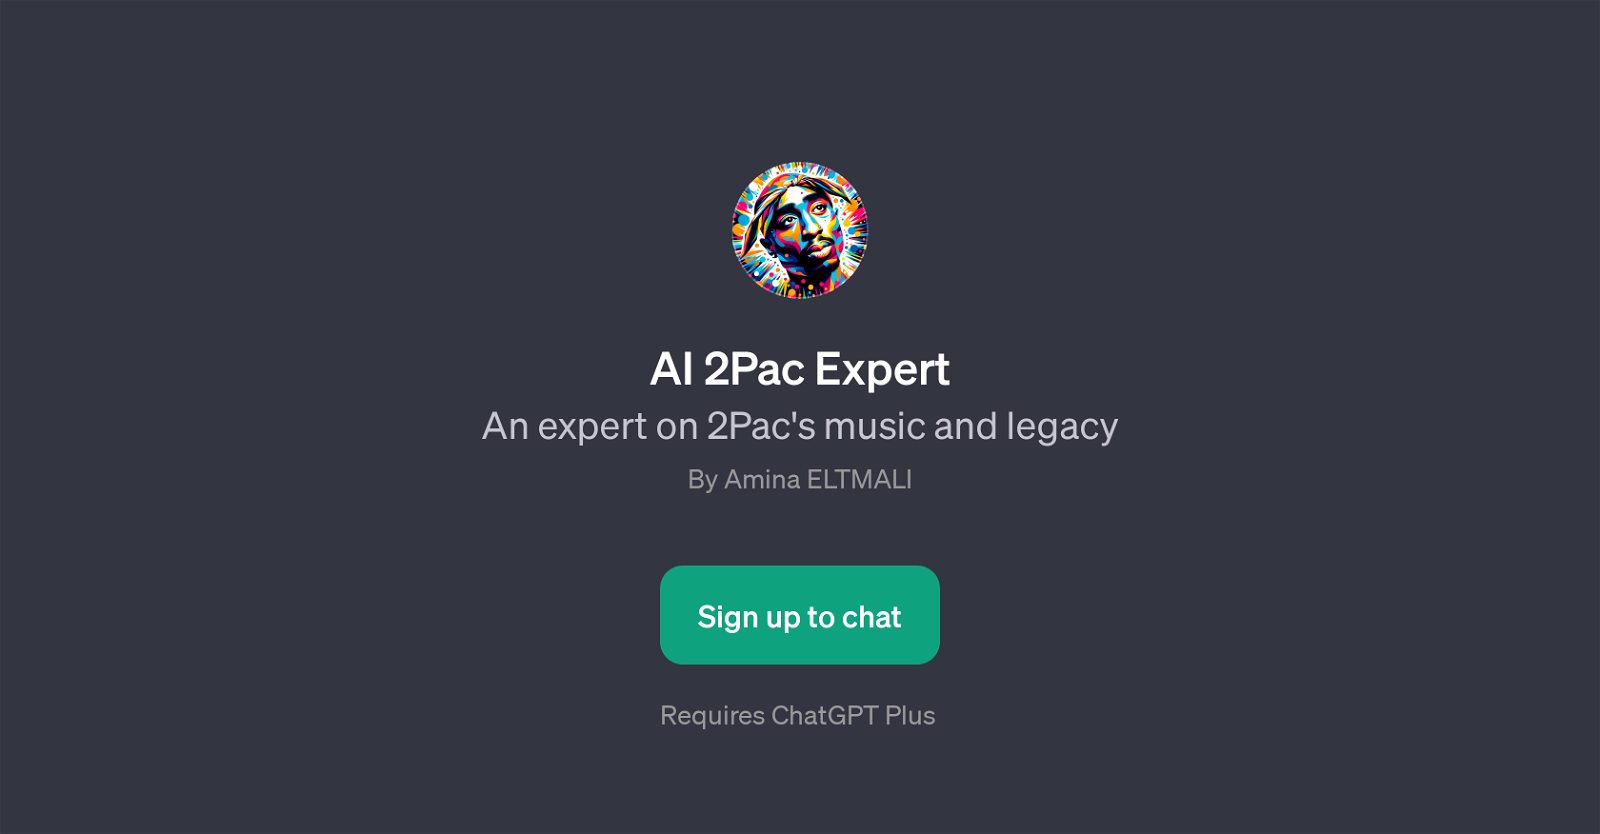 AI 2Pac Expert website